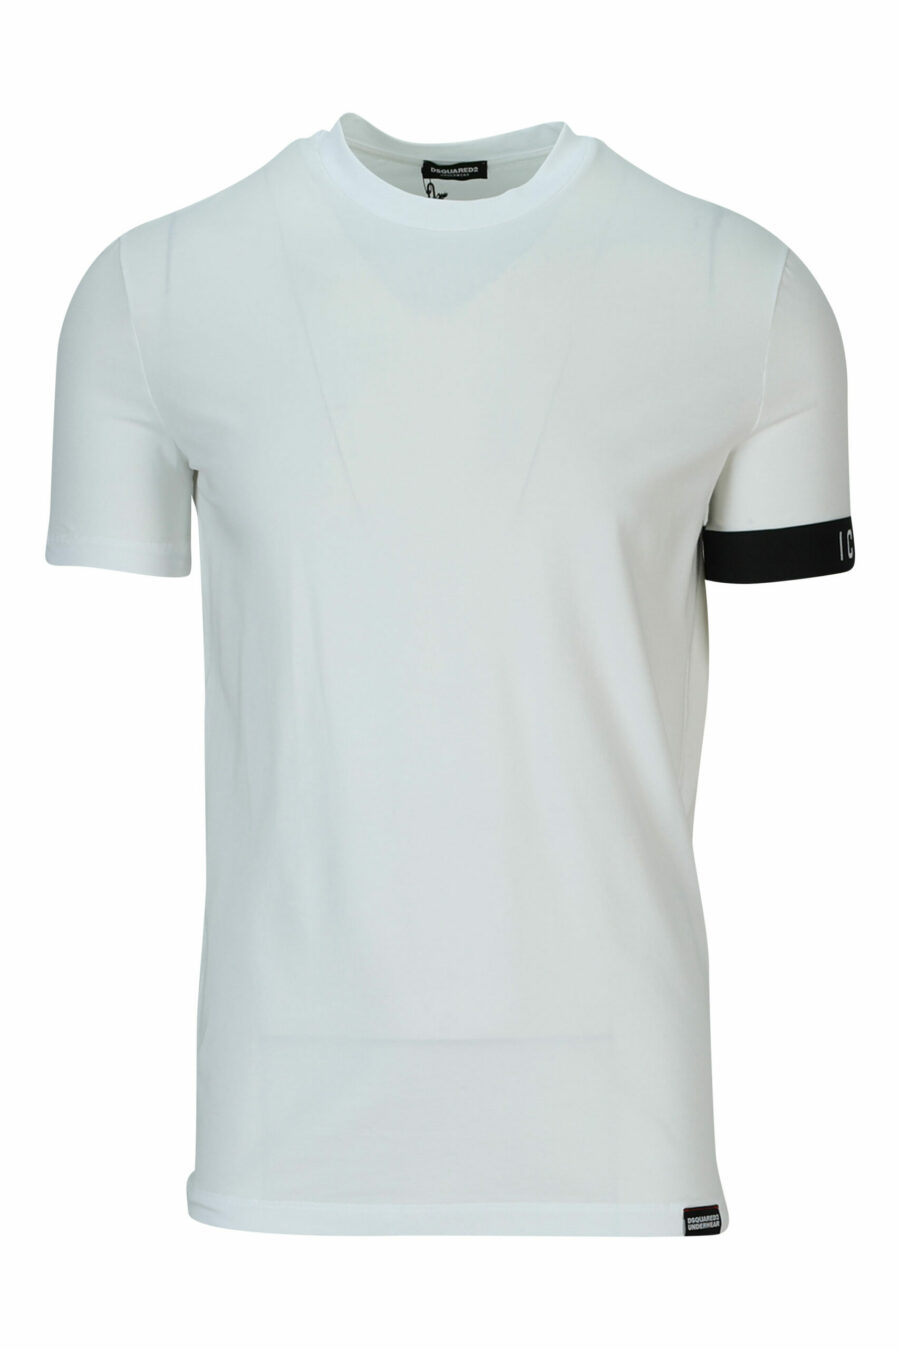 Weißes T-Shirt mit schwarzem Logo - 8032674767493 skaliert